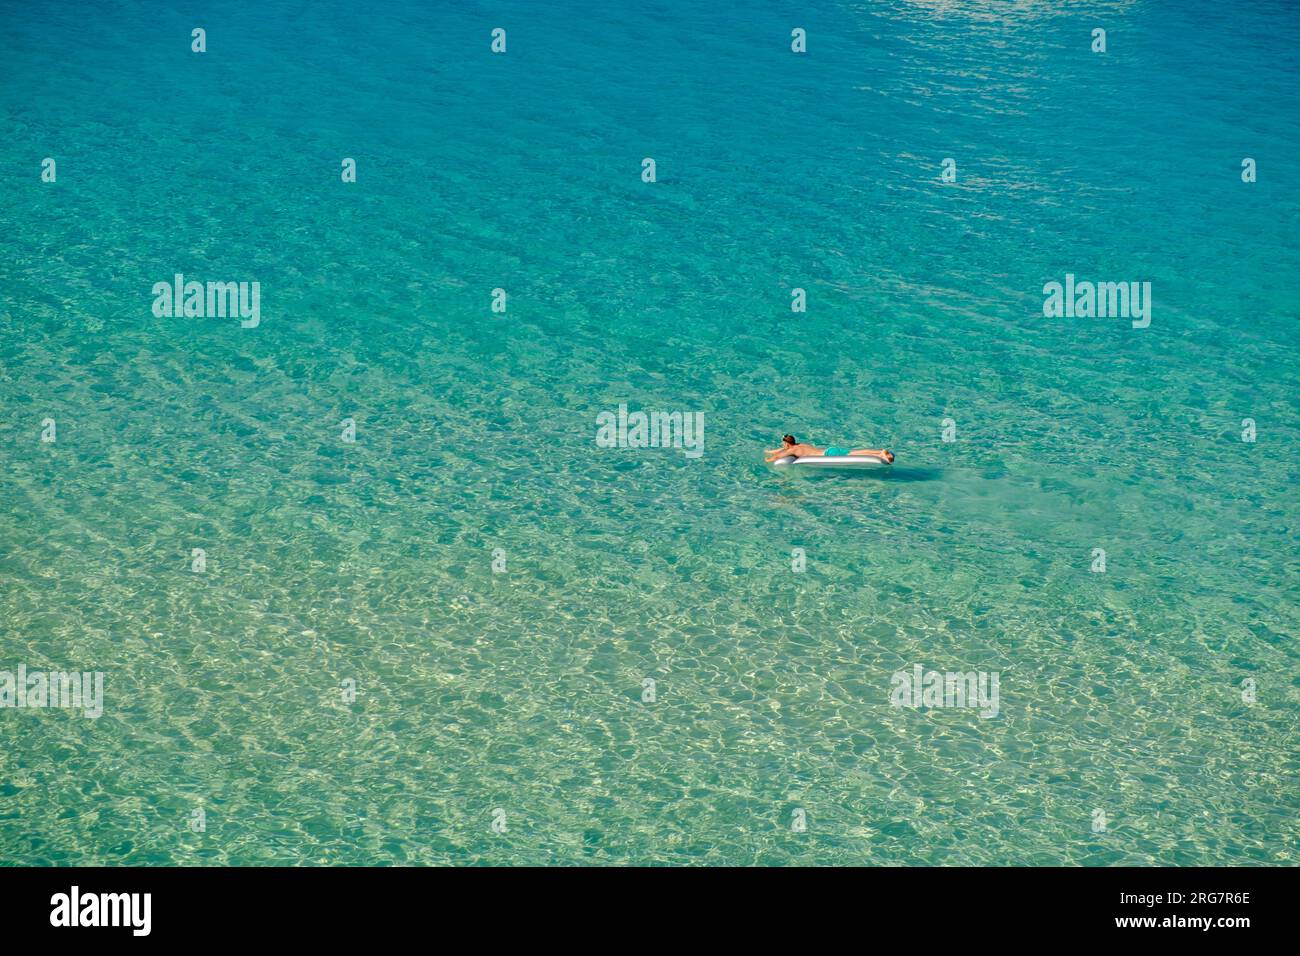 Kavourotrypes, Grèce - 14 août 2017 : vue d'un seul touriste sur un matelas gonflable profitant de la plage de rêve de Kavourotrypes Halkidiki Greec Banque D'Images